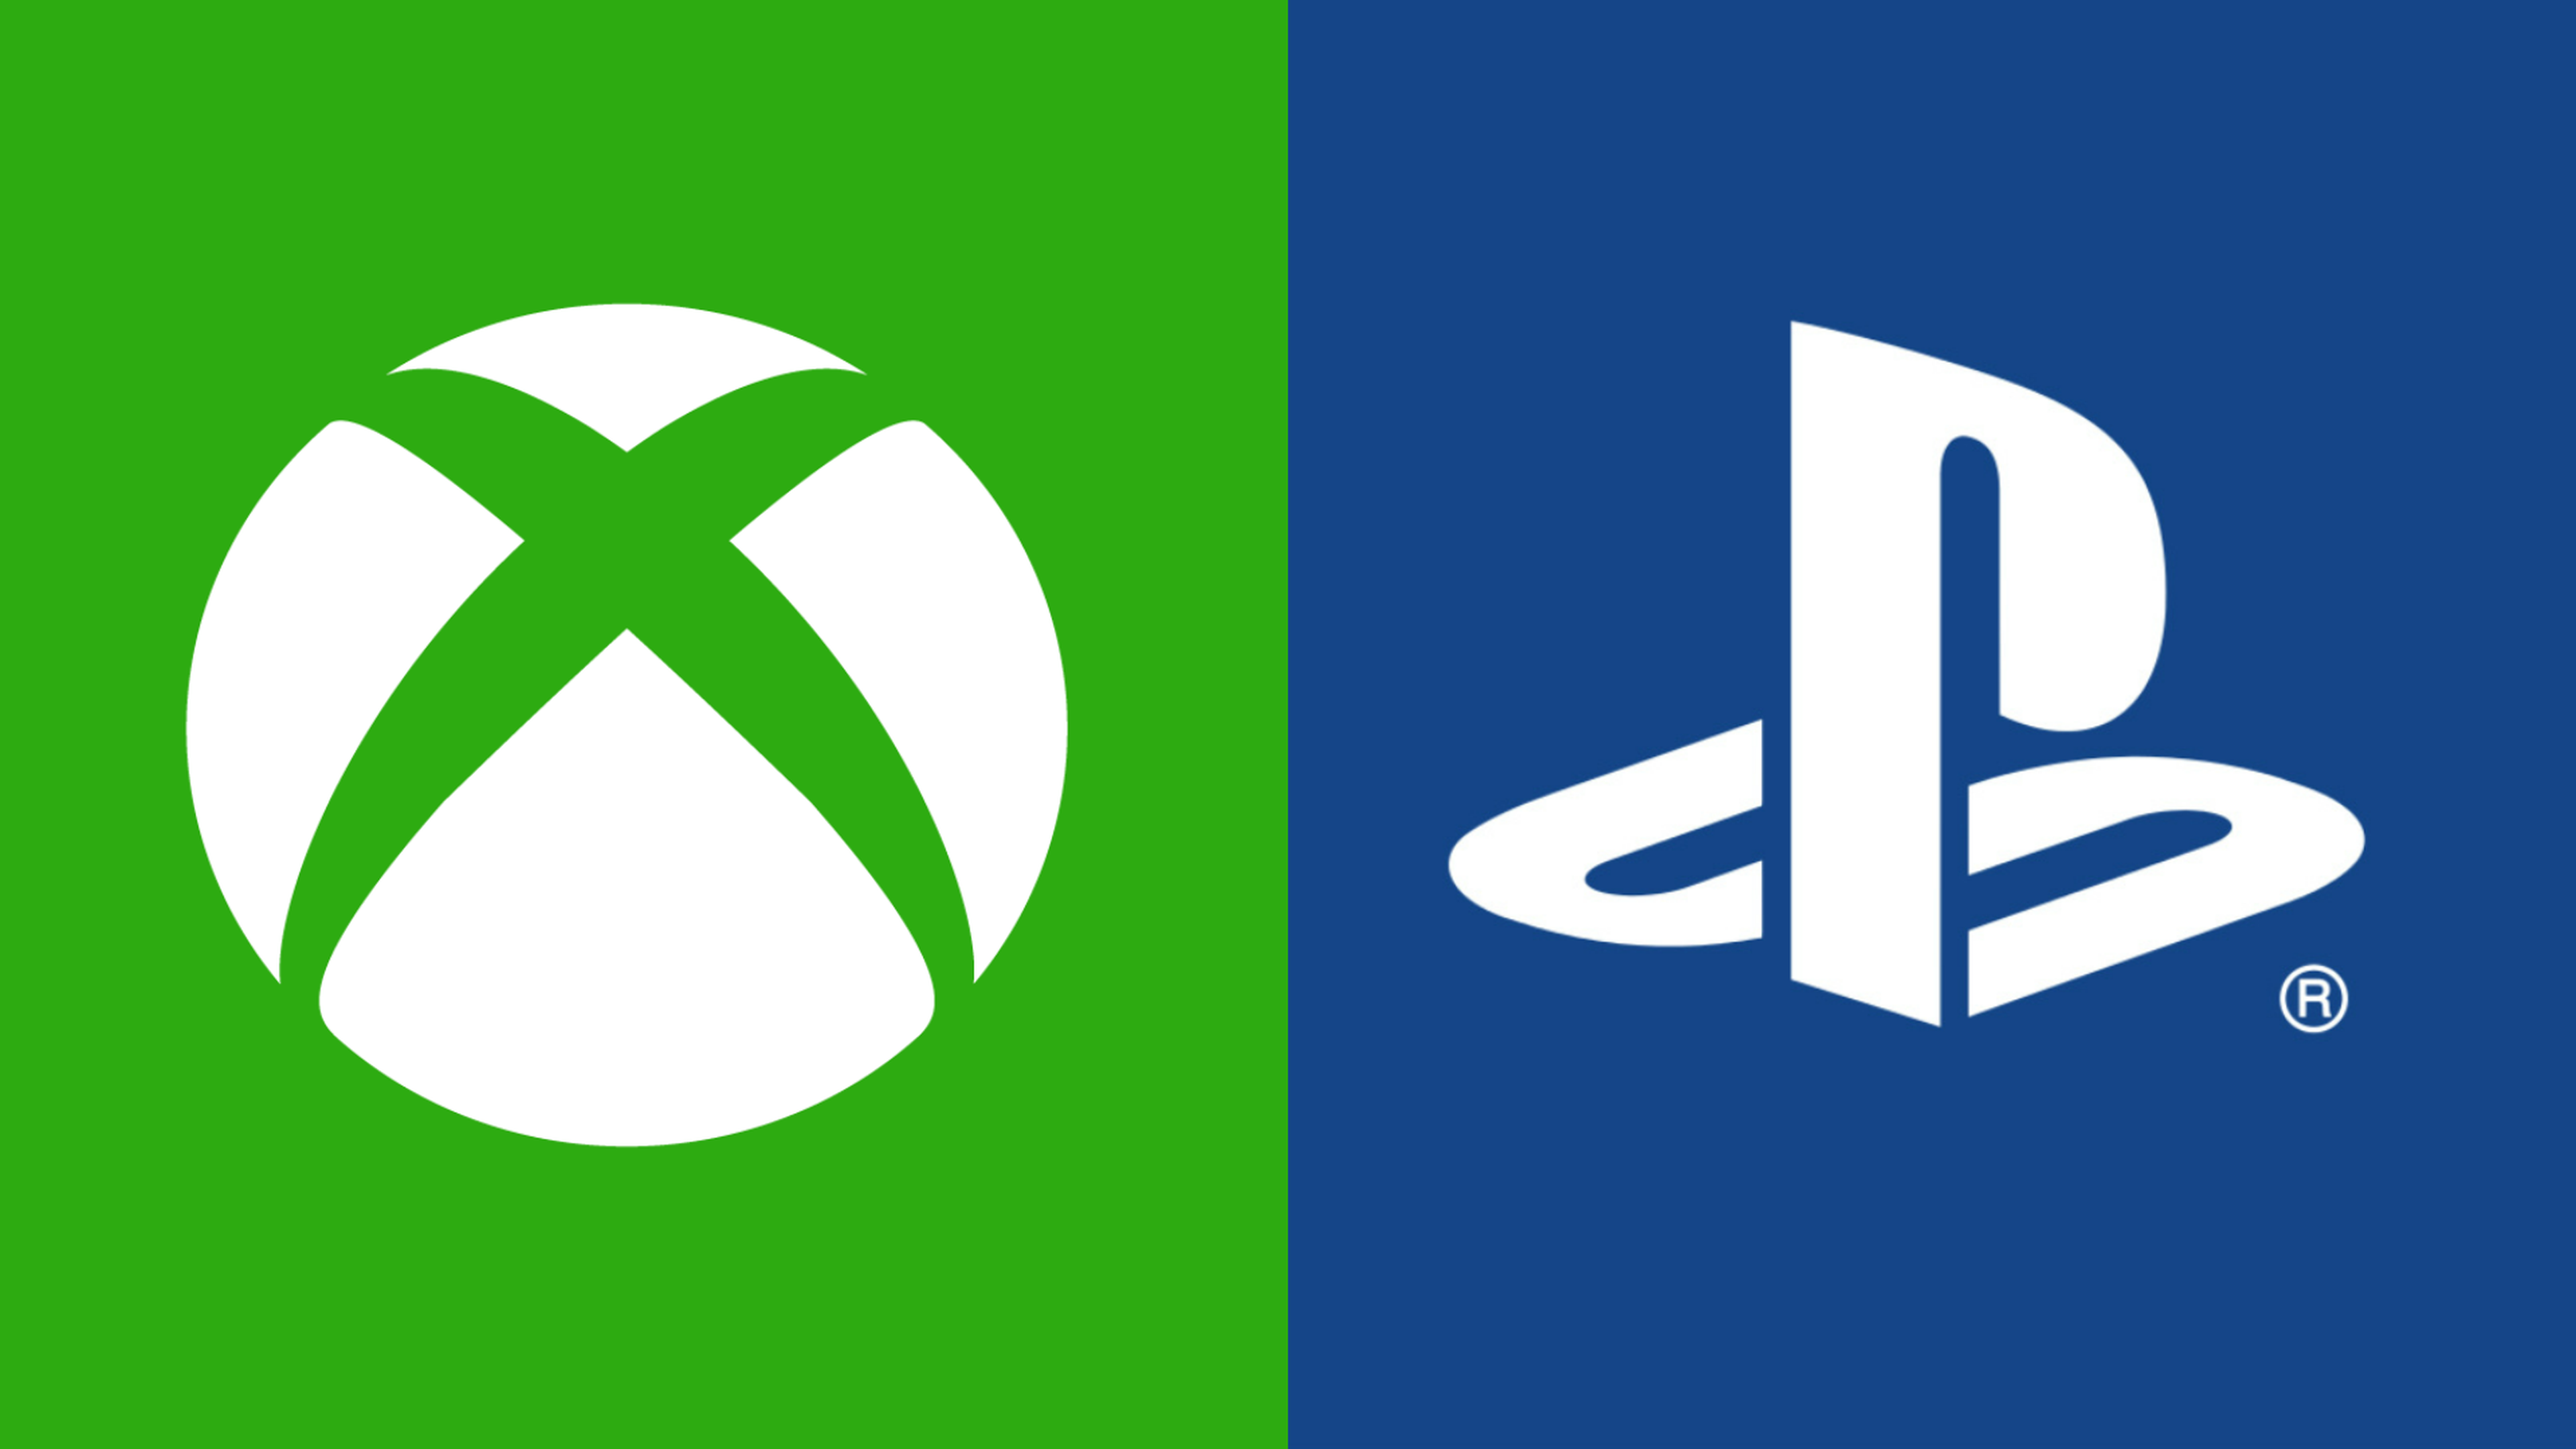 Xbox y PlayStation